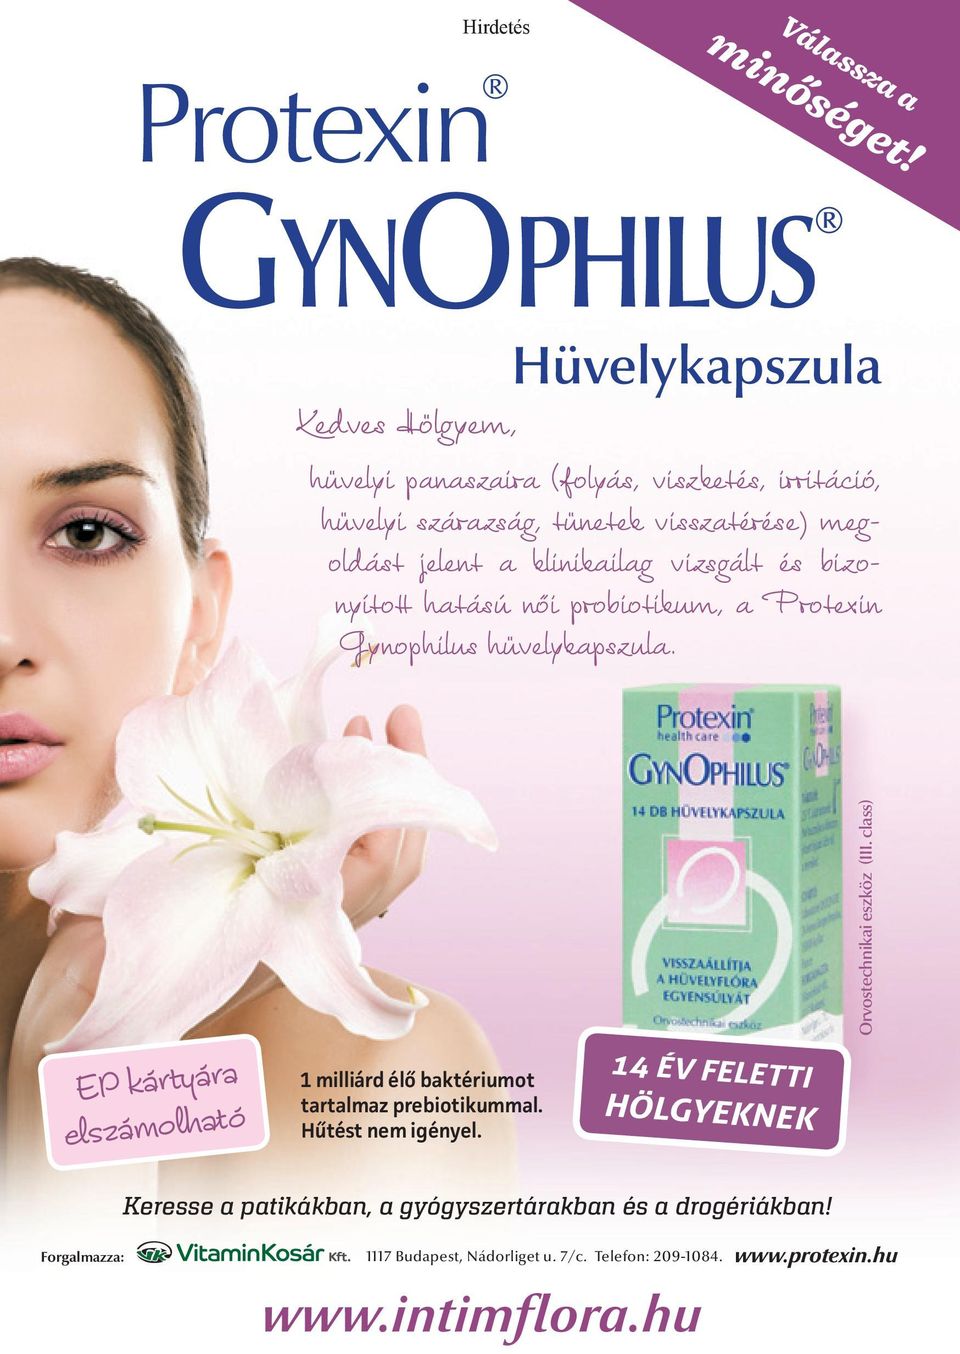 klinikailag vizsgált és bizonyított hatású női probiotikum, a Protexin Gynophilus hüvelykapszula.